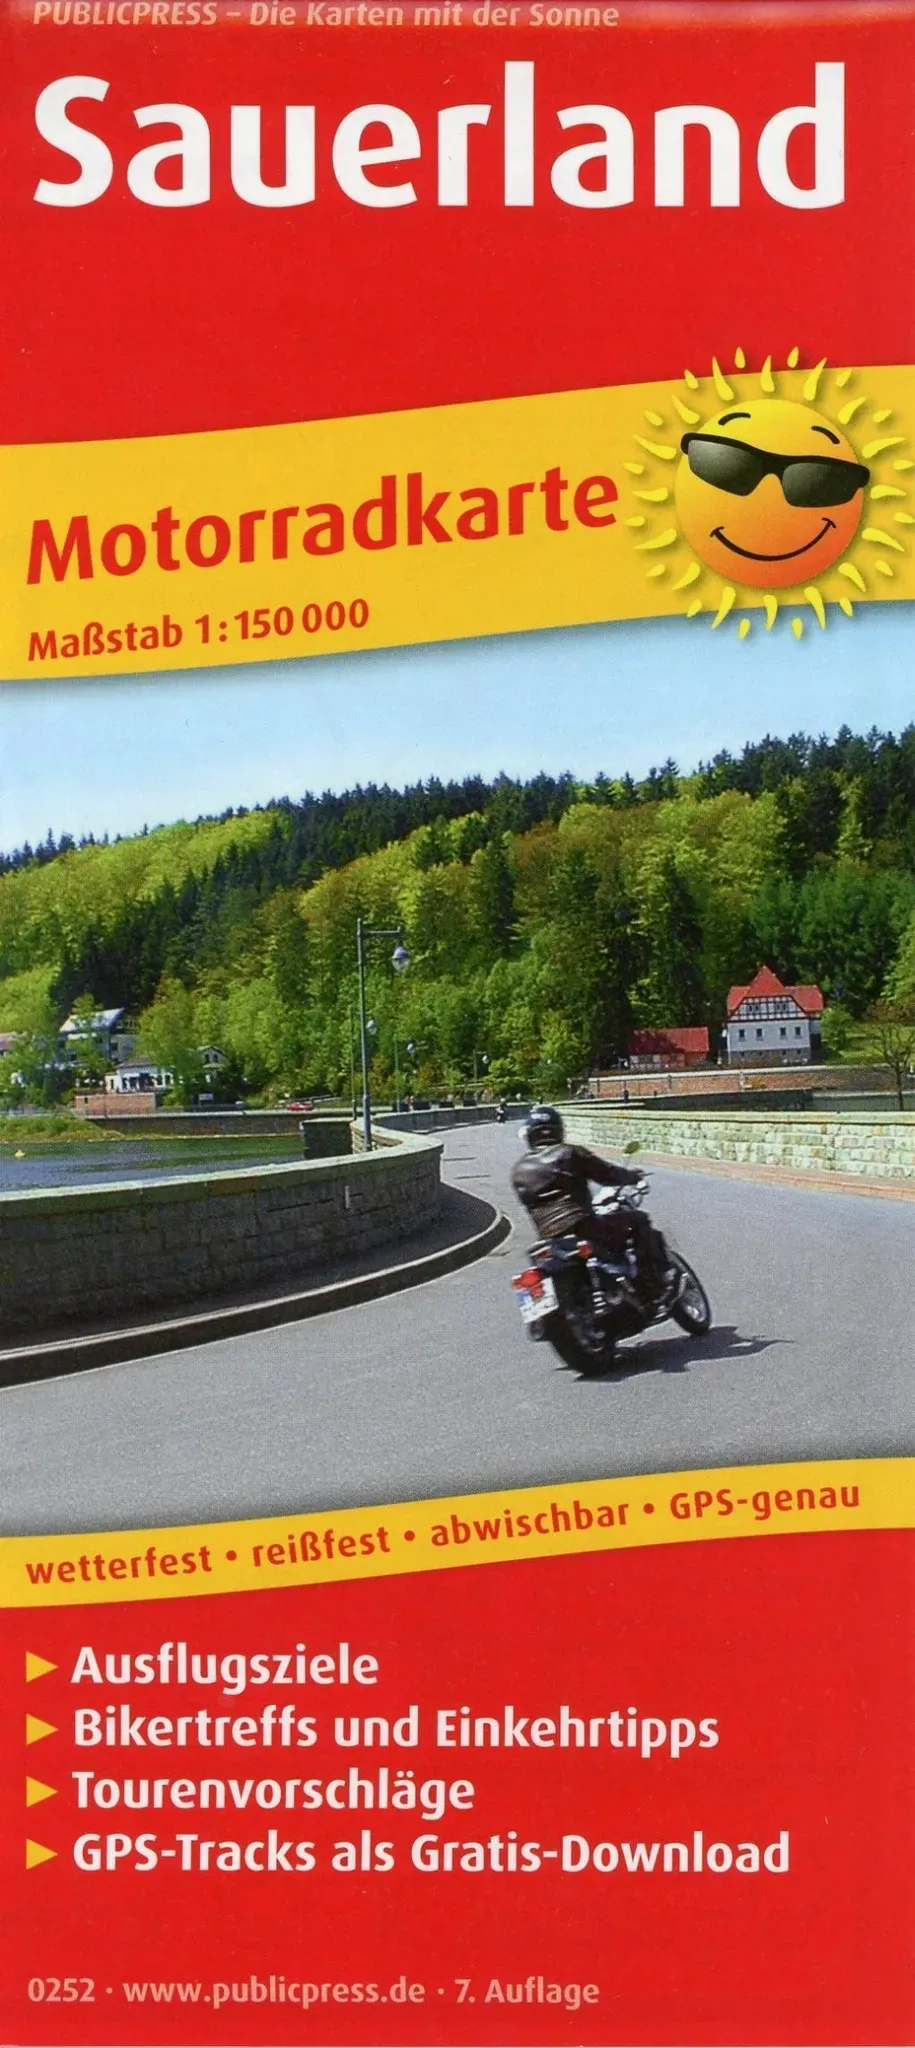 Publicpress Motorradkarte Sauerland  Karte (im Sinne von Landkarte)